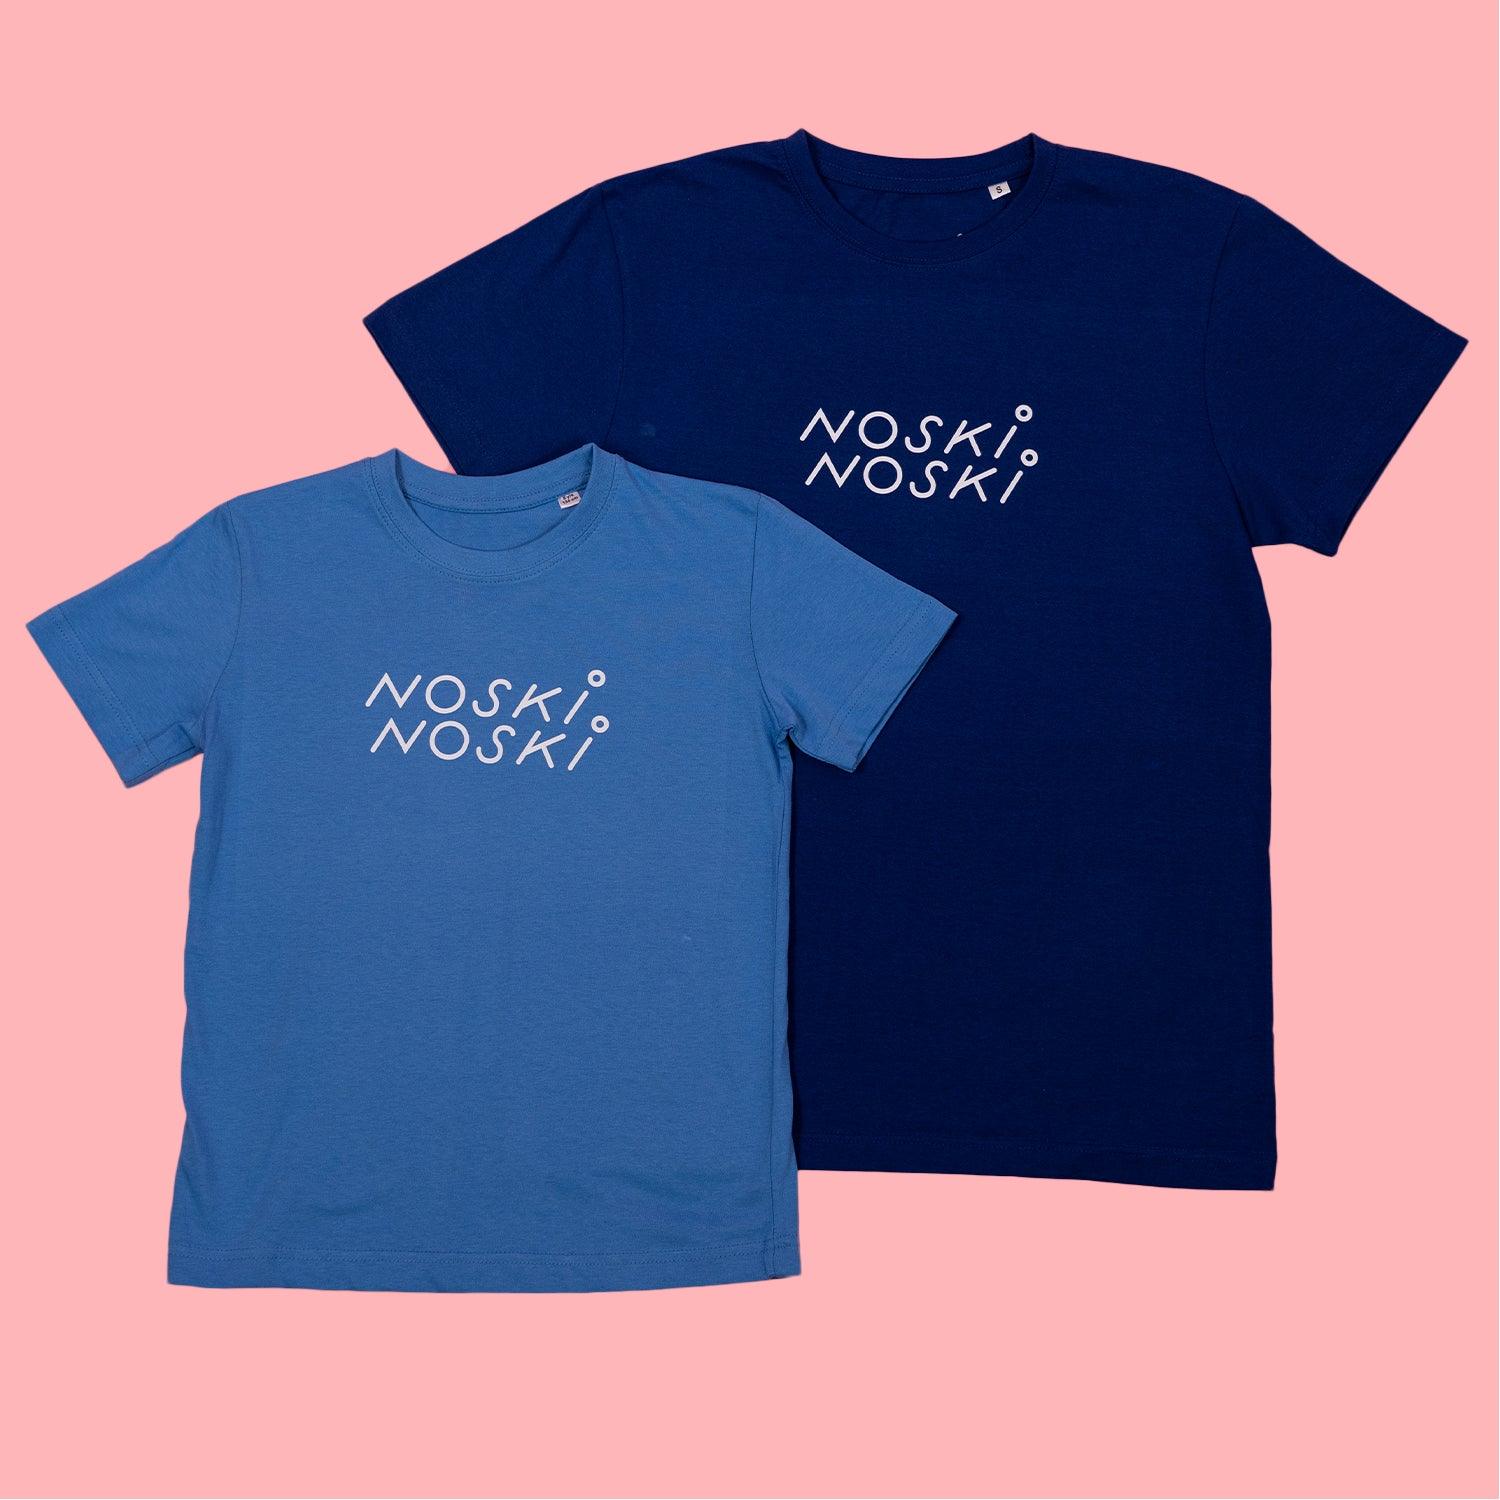 Noski Noski: camisa nn